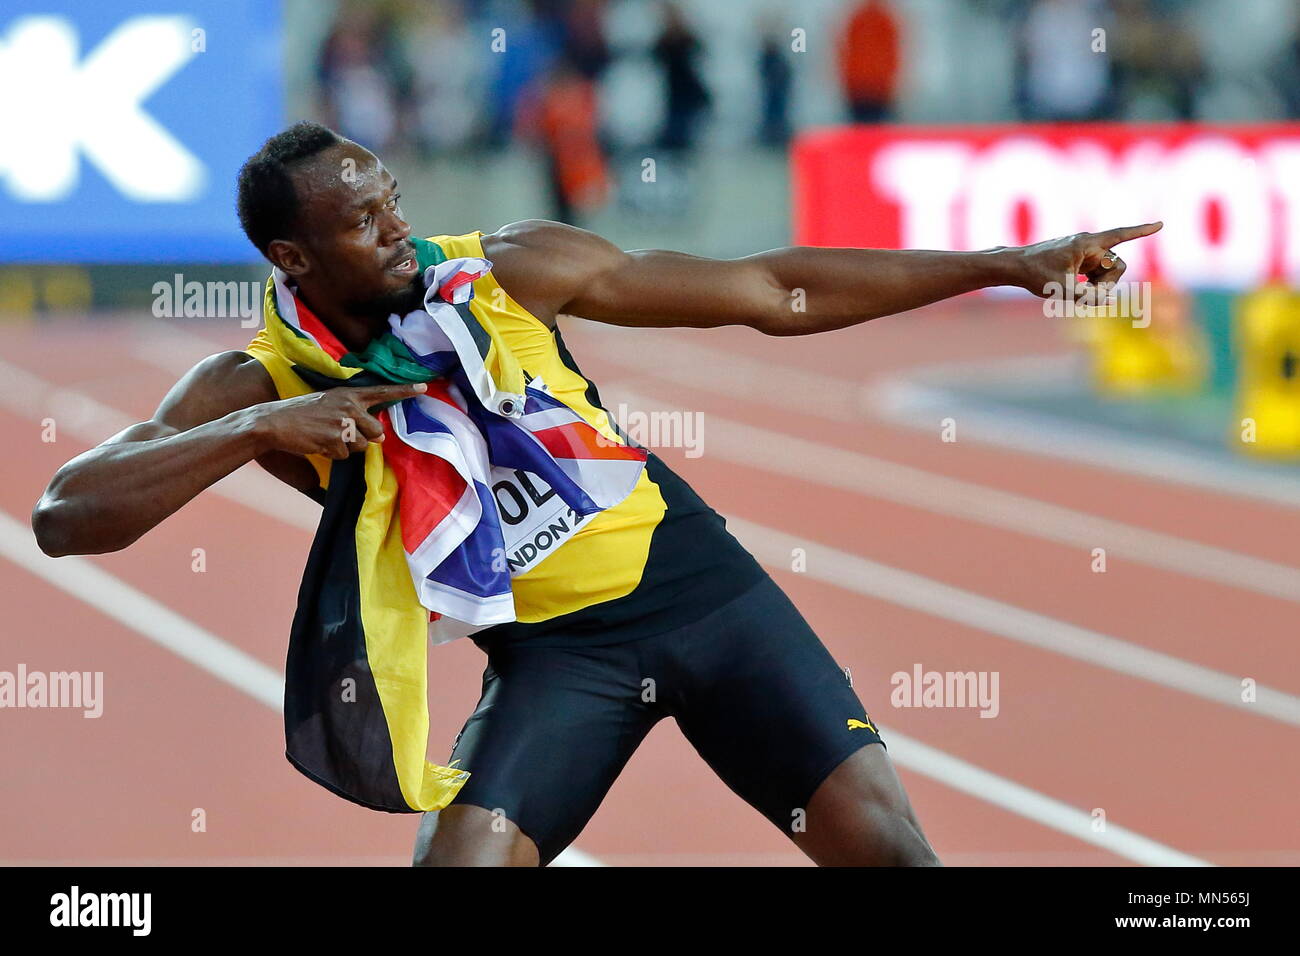 LONDON, ENGLAND - 05. August: Usain Bolt aus Jamaika, das seine letzten 100 m Rennen laufen, steht sowohl mit der Jamaikanischen und Union Jack Flagge um den Hals und zieht in seiner berühmten Blitz pose in Tag zwei des 16. IAAF Leichtathletik WM 2017 in London an der London Stadion am 5. August 2017 in London, Vereinigtes Königreich. Foto von Paul Cunningham Stockfoto